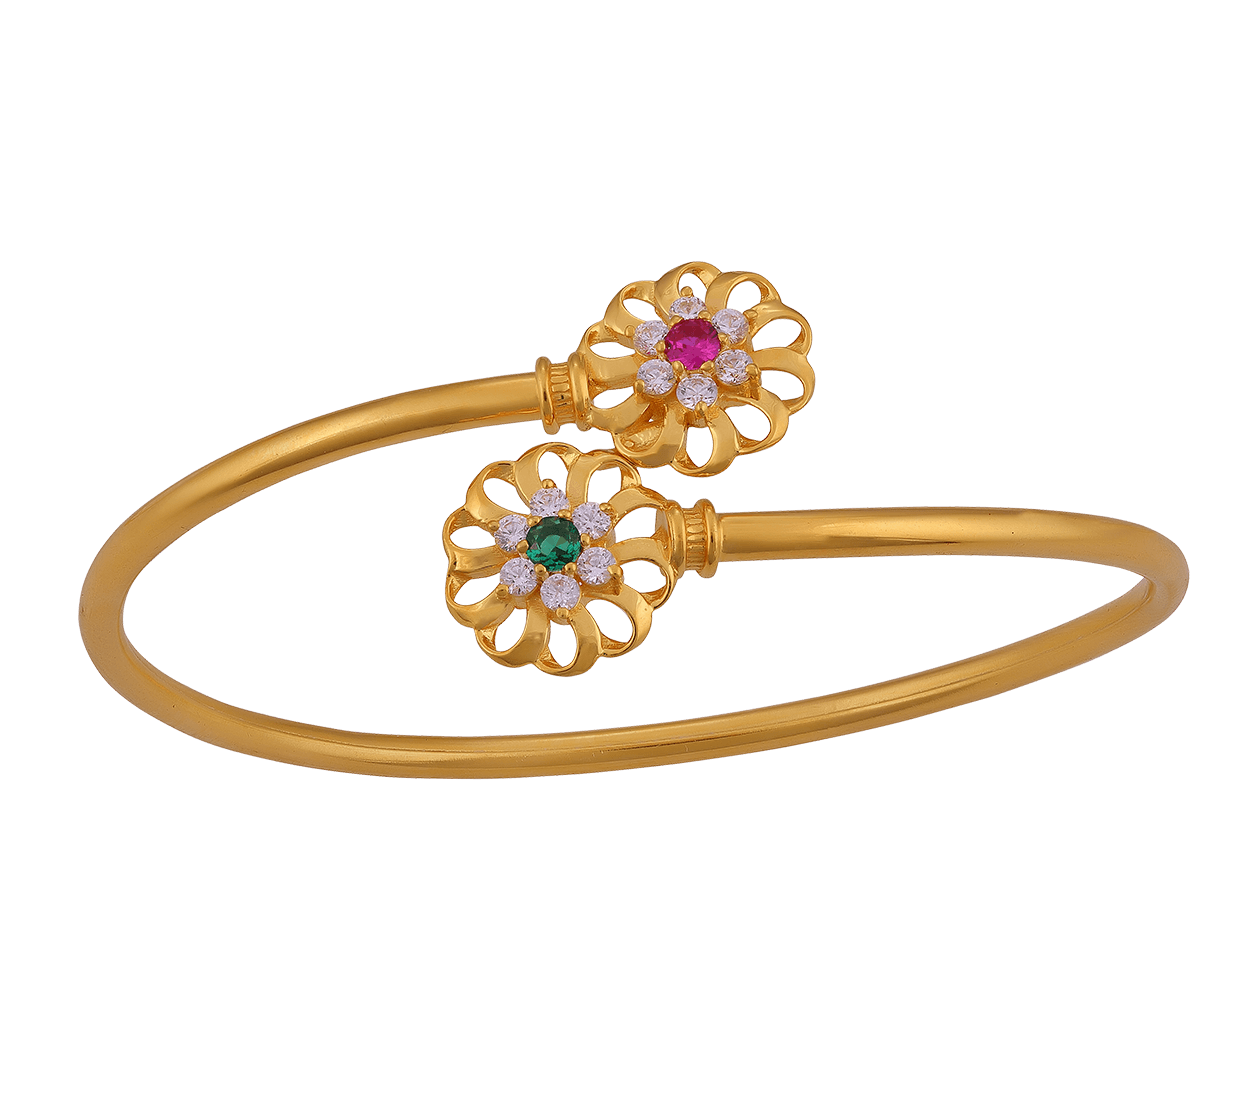 24K 995 Pure Gold Byzantine Coin Bracelet For Women - 1-1-GBR-V00635 in  11.380 Grams